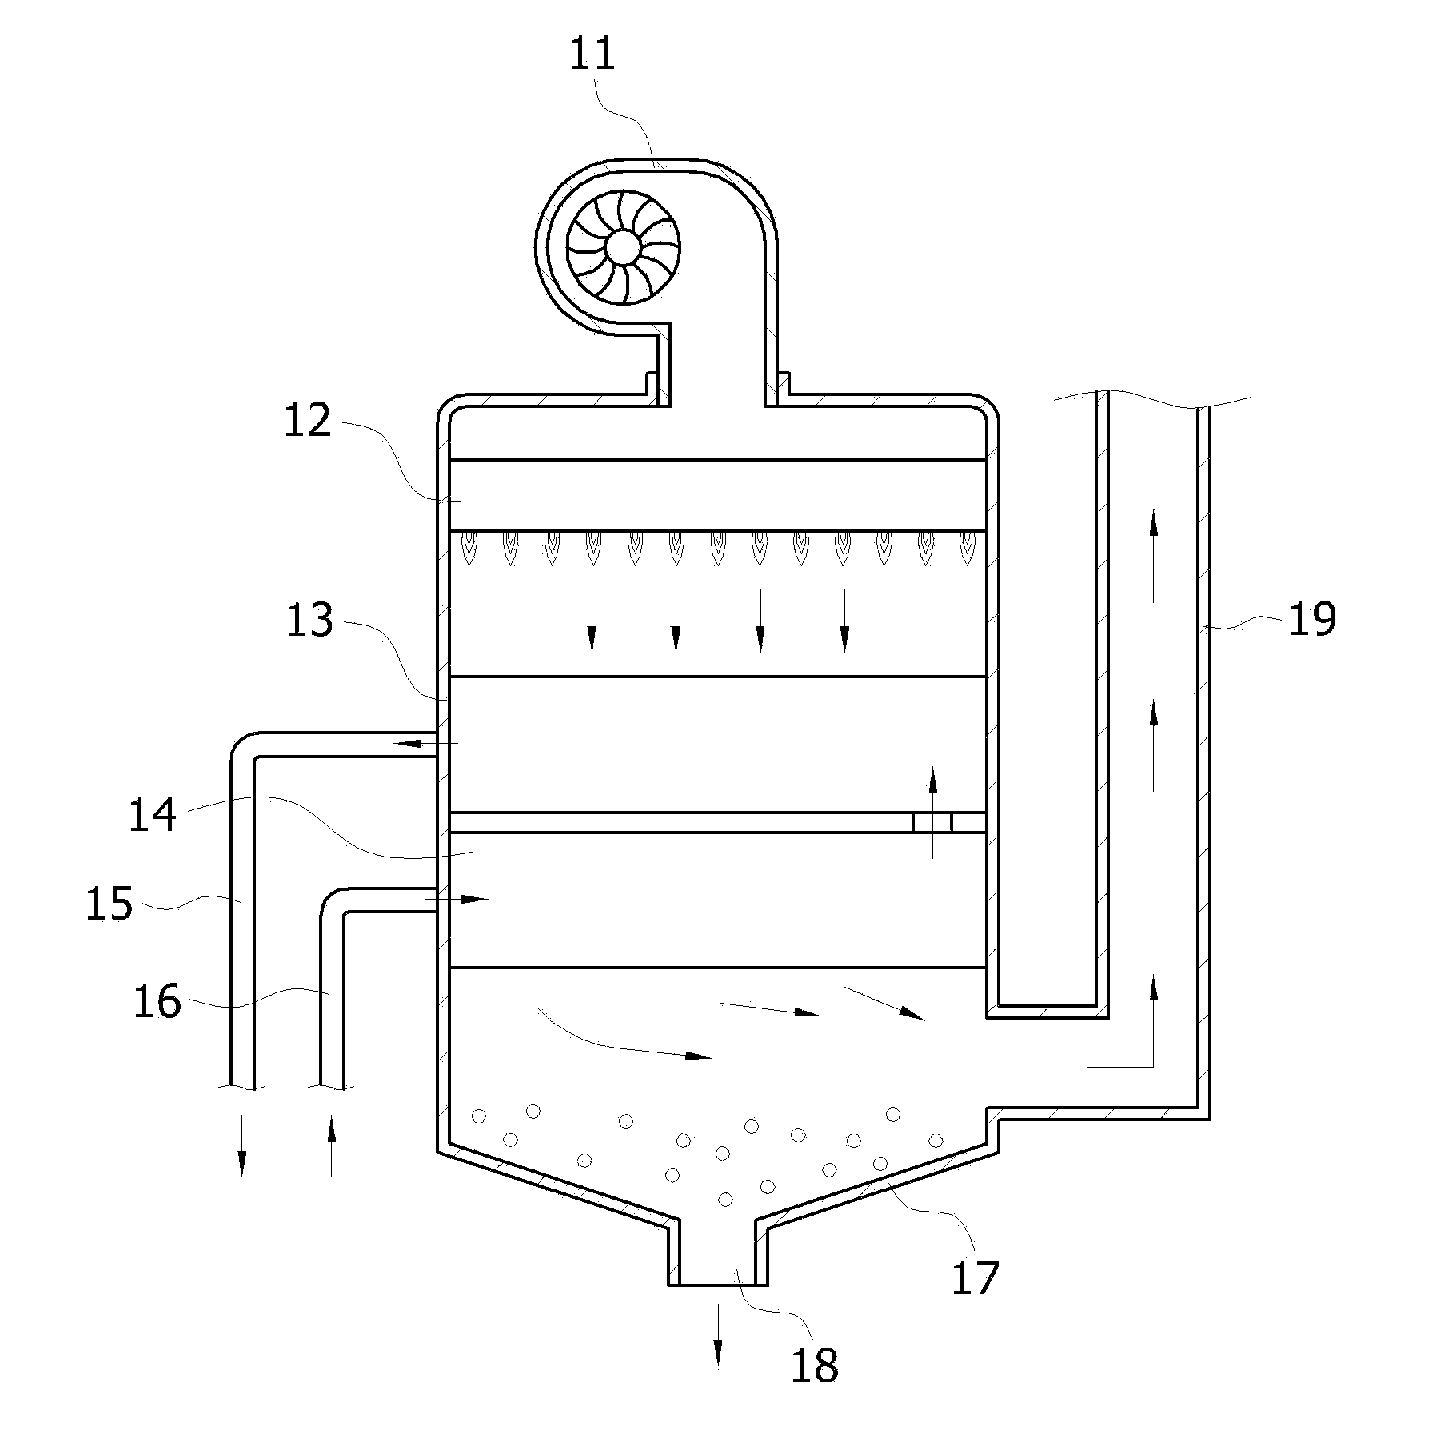 Heat exchanger of upward combustion type condensing boiler